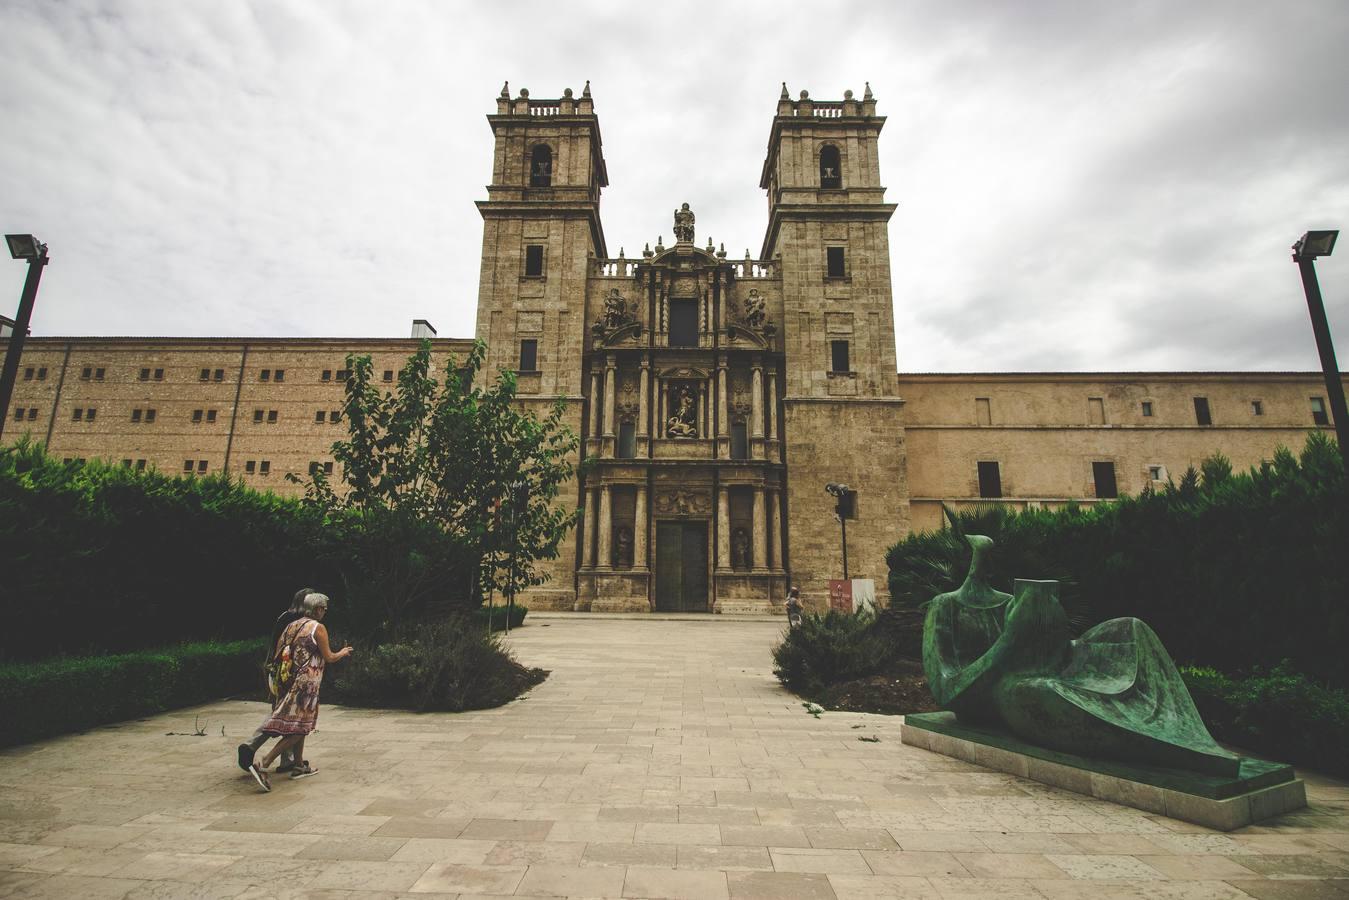 El monasterio de San Miguel de los Reyes es una joya del patrimonio valenciano. Su orígenes se remontan a 1381, cuando, sobre la antigua alquería musulmana de Rascaña, los abades de Santa María de la Valldigna fundaron un pequeño monasterio cisterciense llamado San Bernat de Rascanya, que actualmente es la zona norte del monumento.